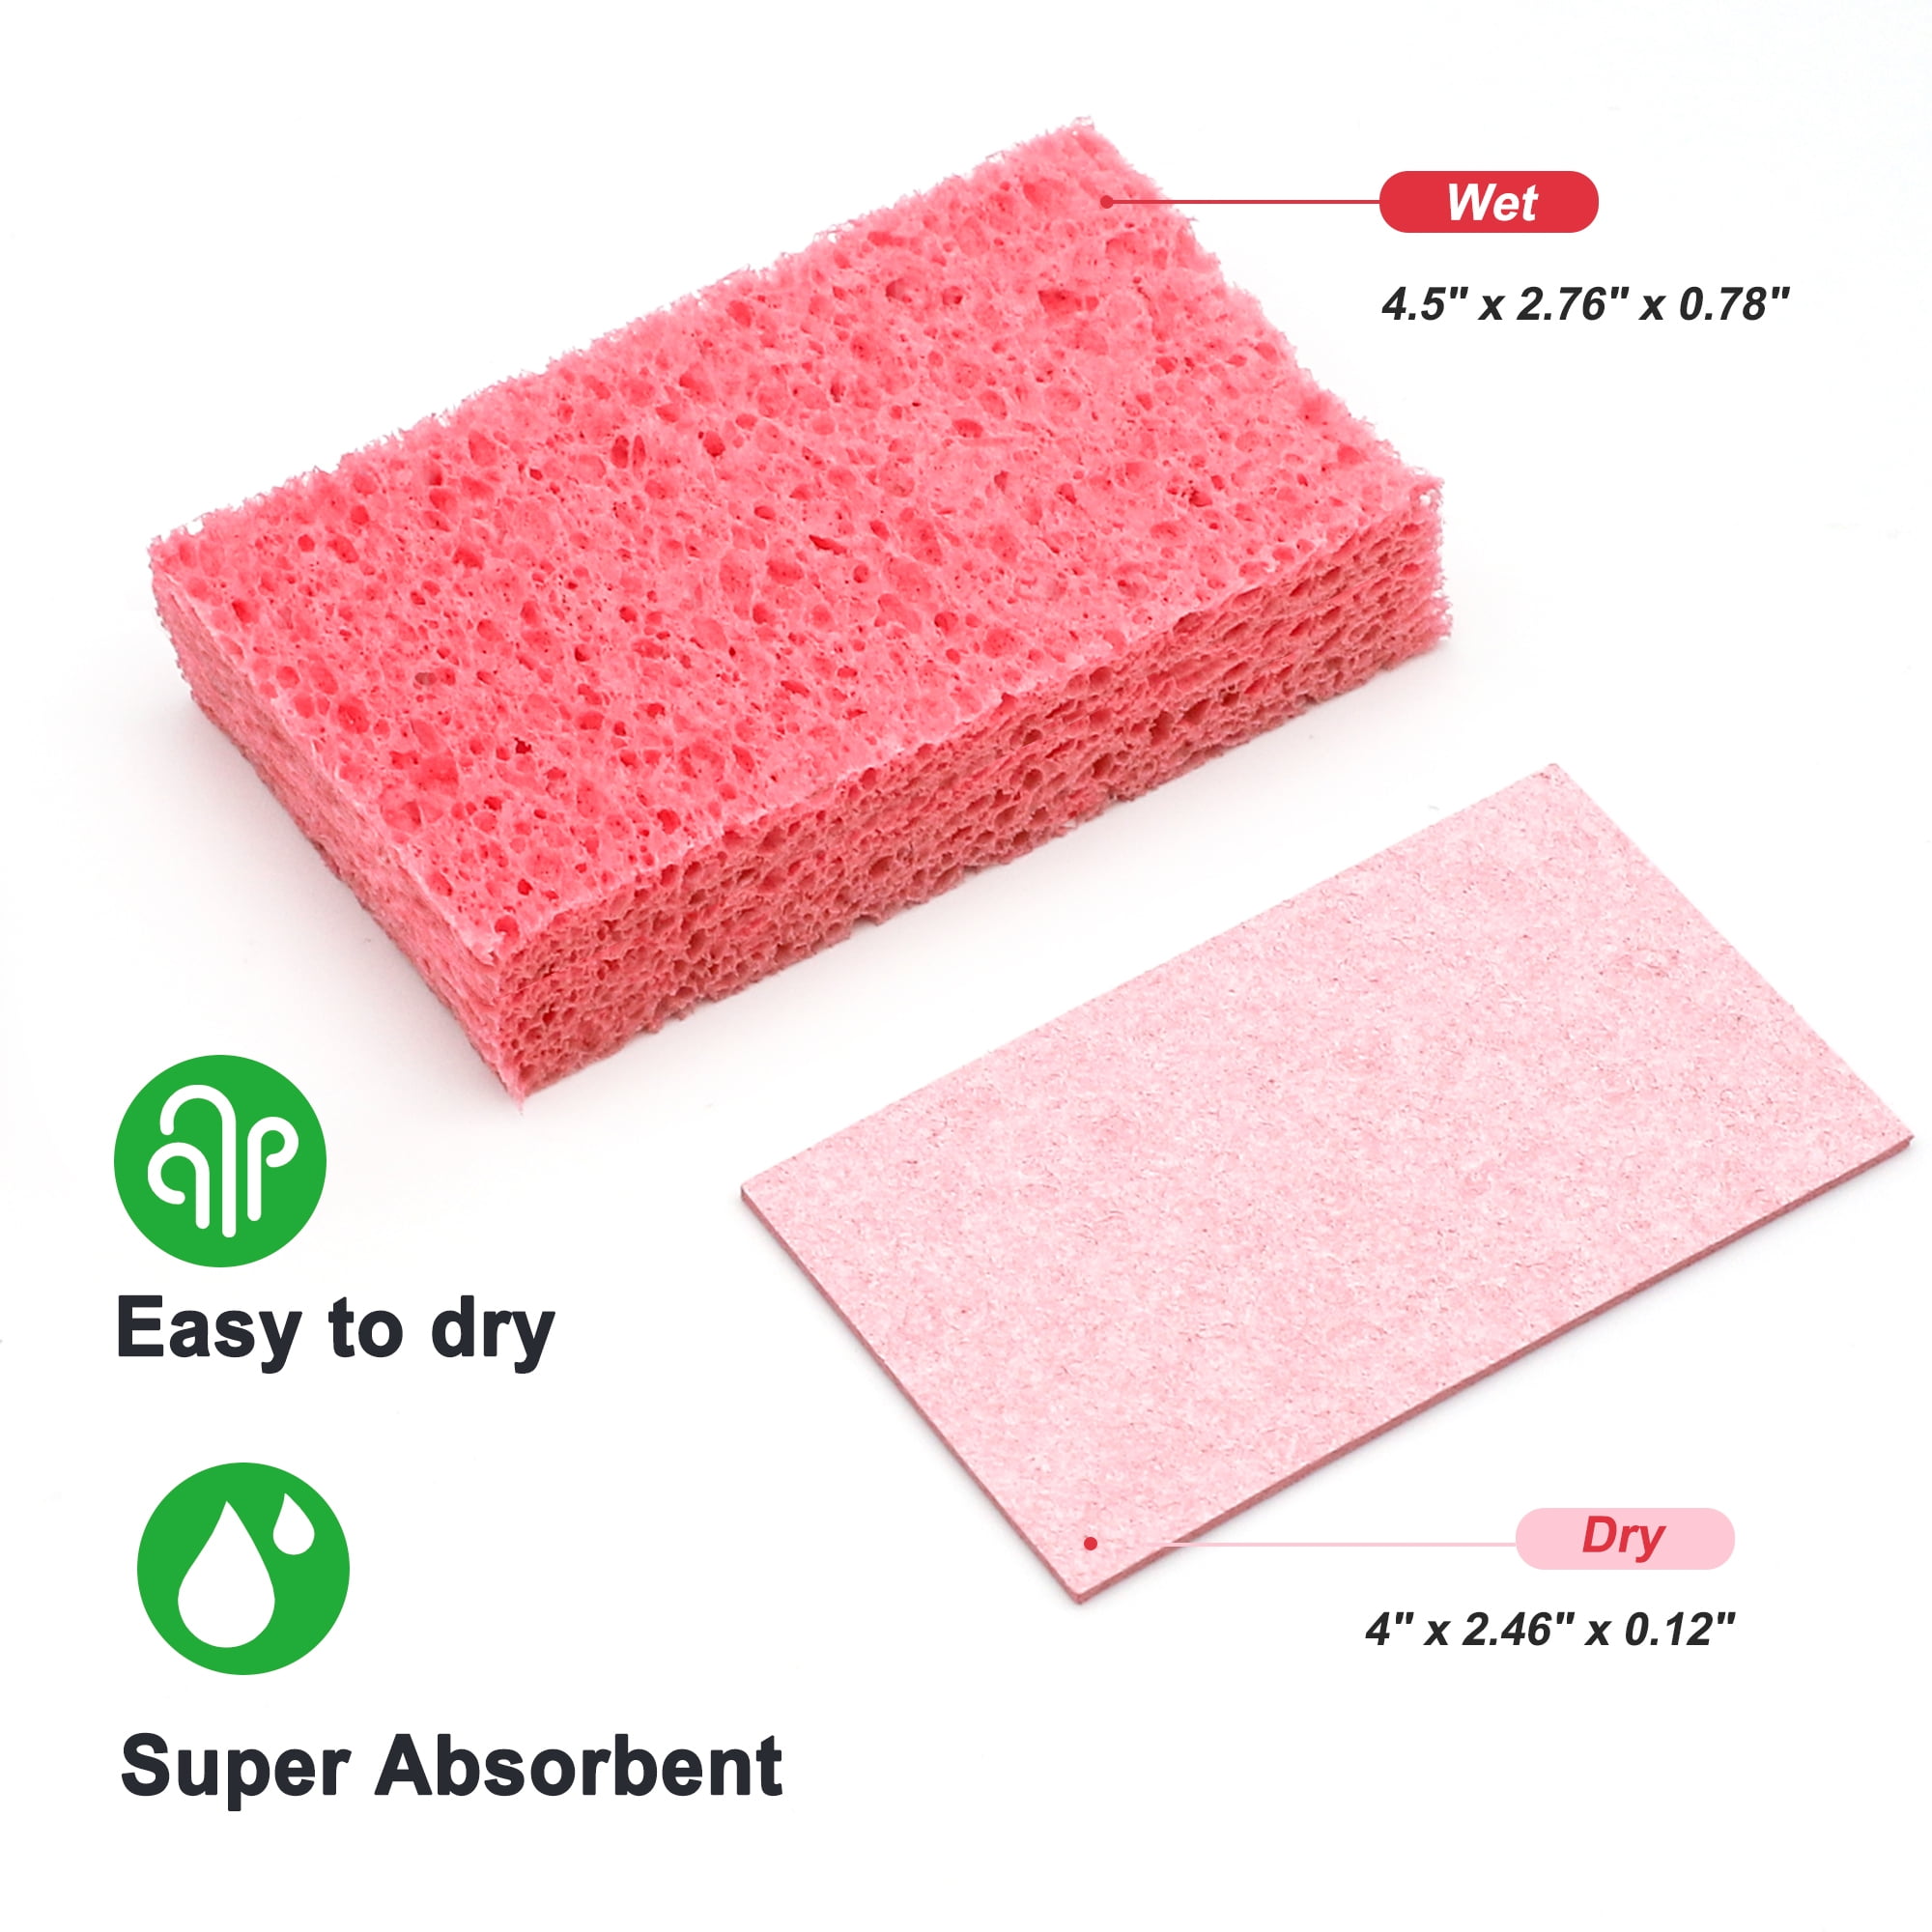 oTwoBear Cellulose Kitchen Sponge, Dishwashing Sponge for Kitchen, Cookware, Bathroom - Compressed Packaging, 6 Pack